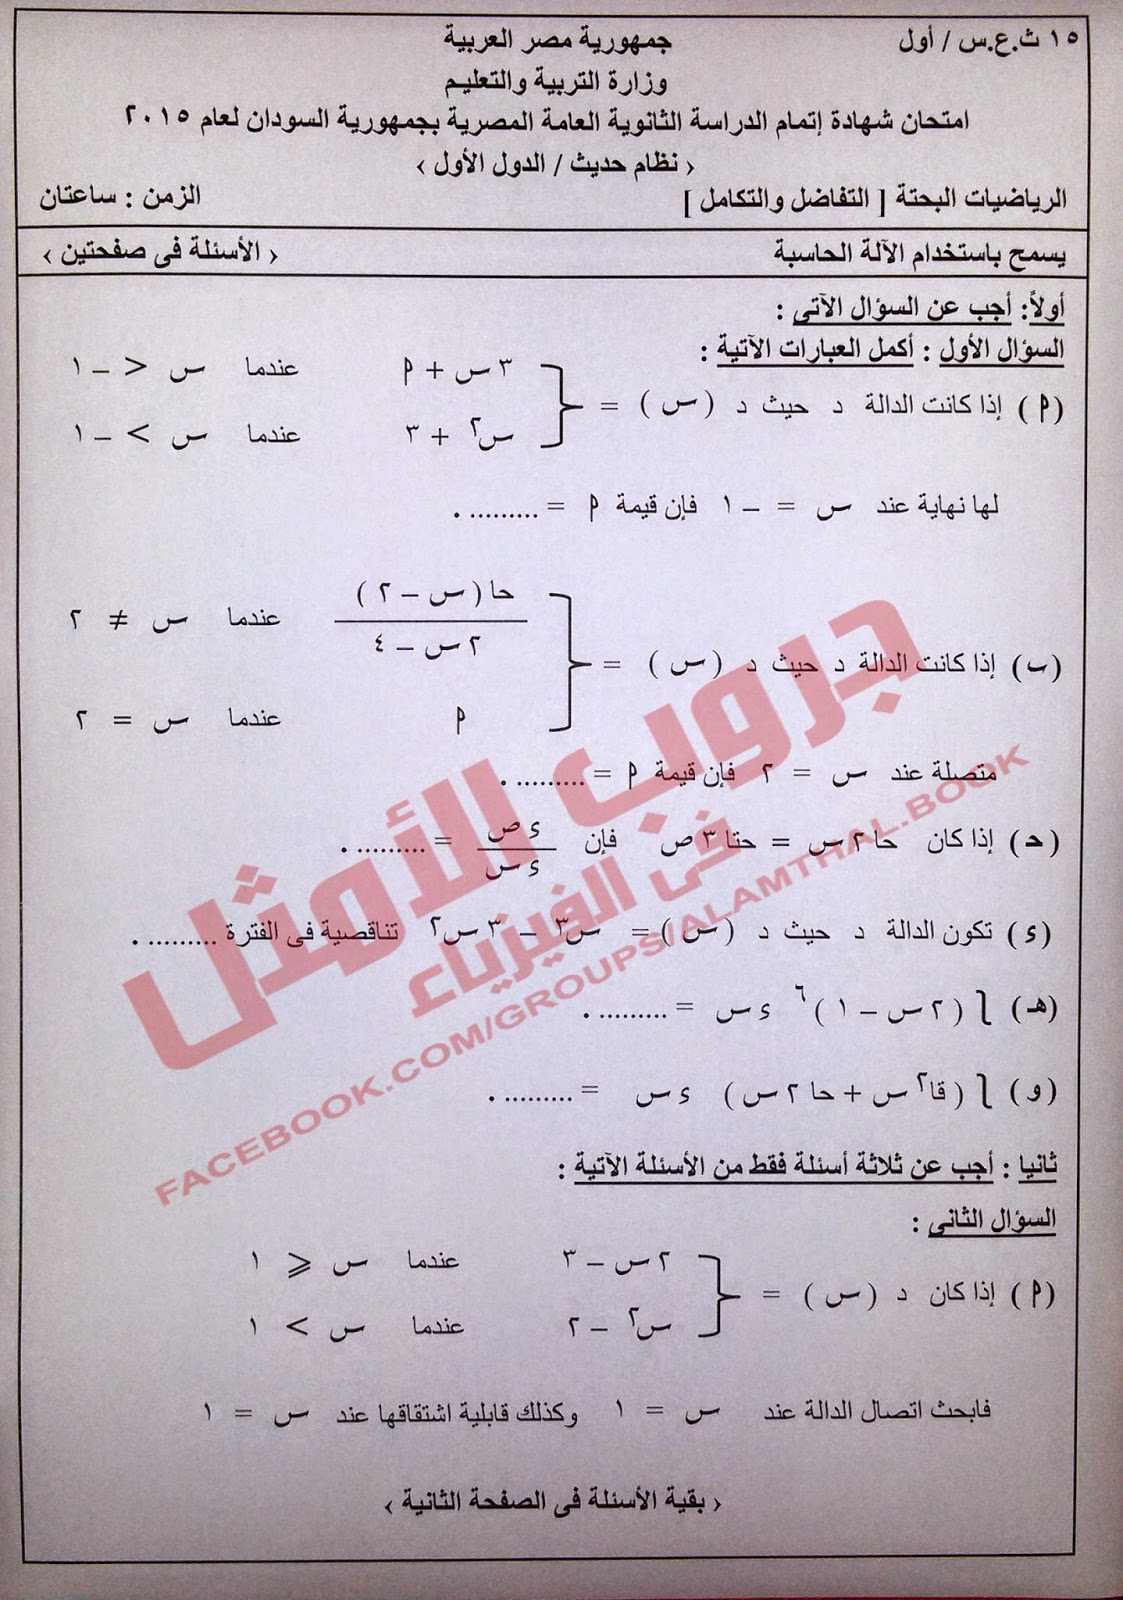 امتحان الرياضيات البحتة (التفاضل والتكامل) للثانوية العامة "نظام حديث"- السودان - الدور الأول2015 87